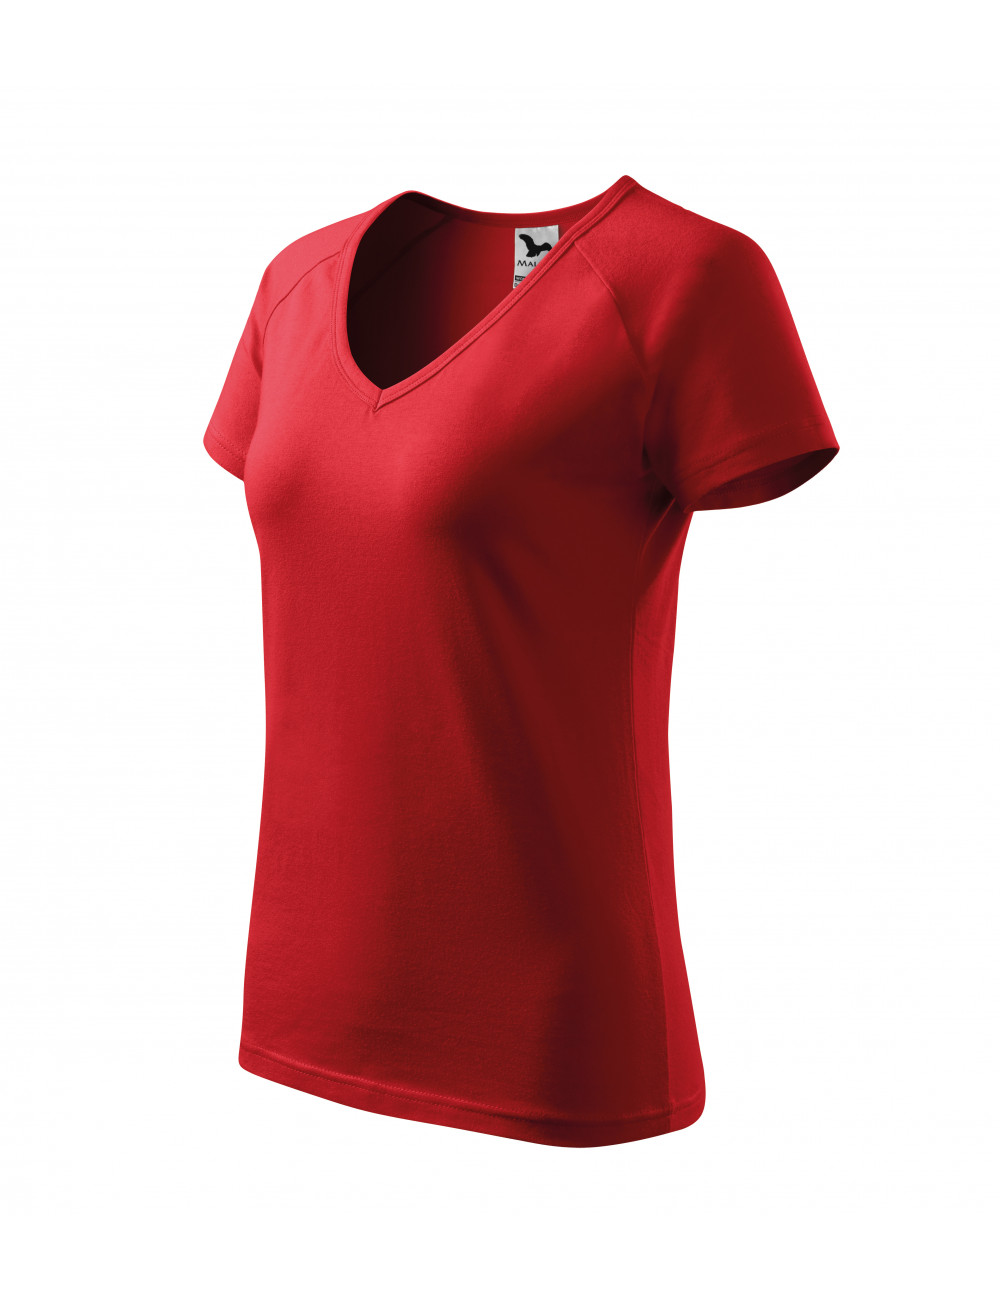 Koszulka damska dream 128 czerwony Adler Malfini